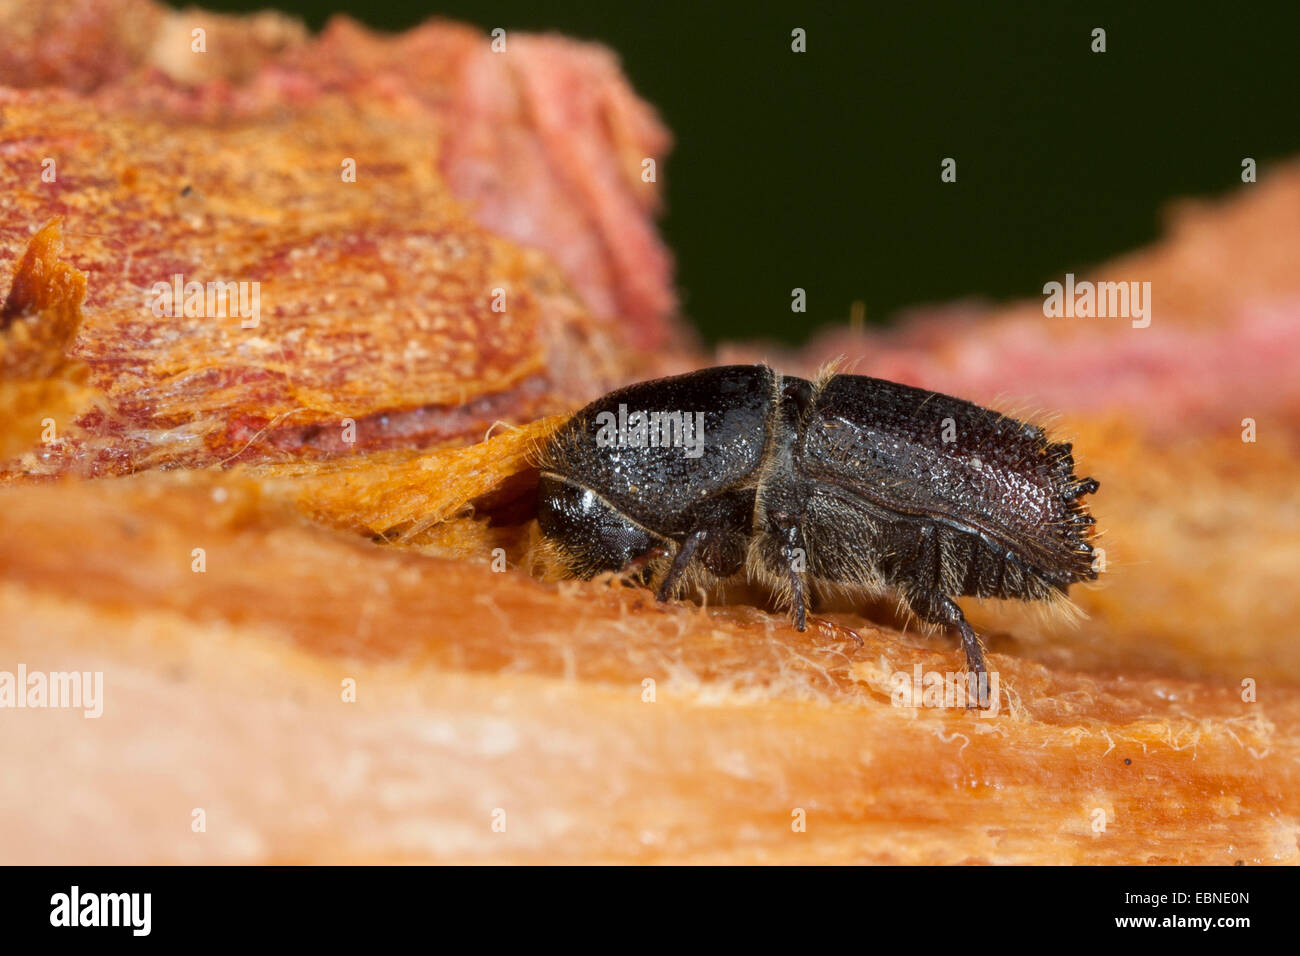 Bark beetle (Ips cf. sexdentatus), on deadwood, Germany Stock Photo